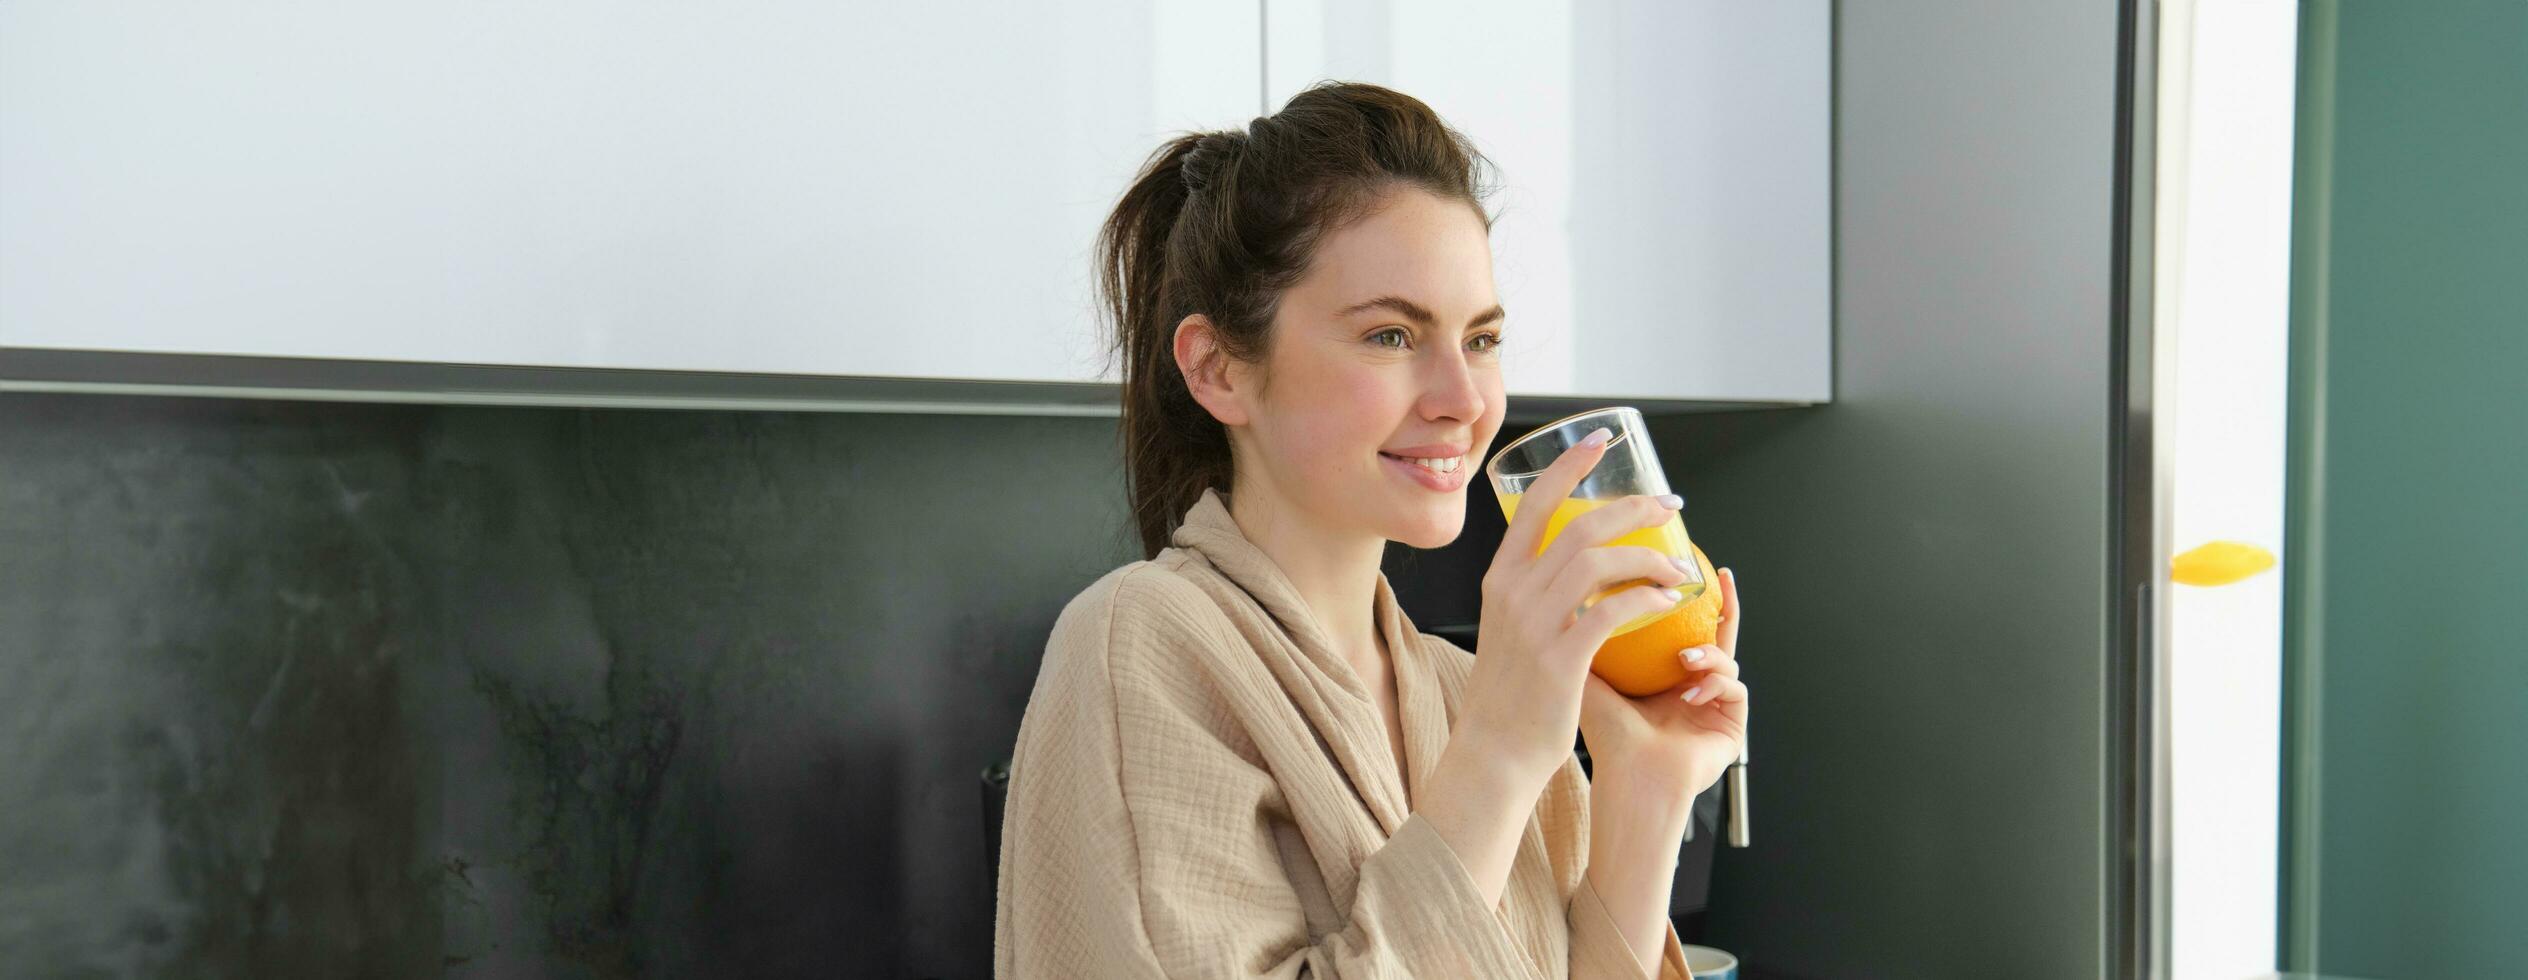 porträtt av snygg kvinna i morgonrock, drycker orange juice från glas och ler, börjar henne dag med friska vana foto